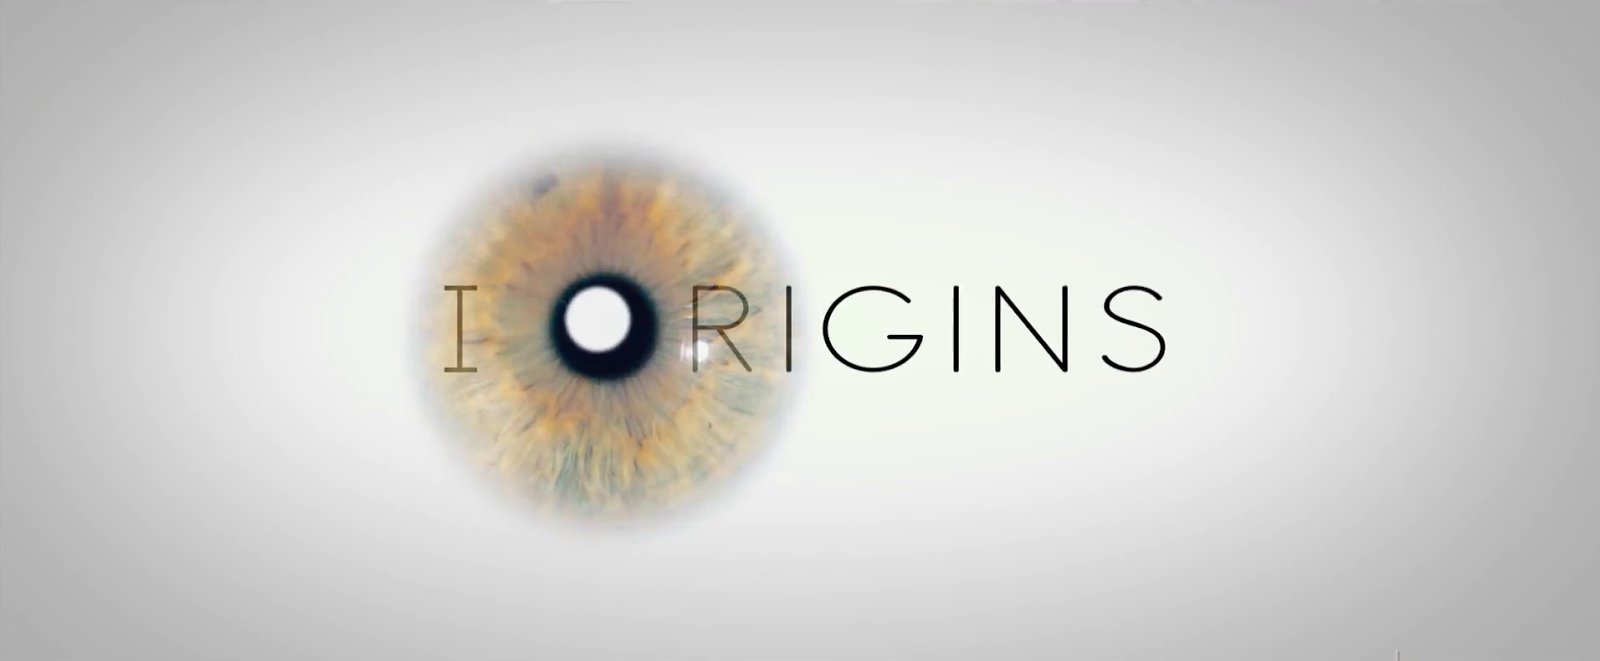 I Origins (2014) 1080p. [Audio Dual]